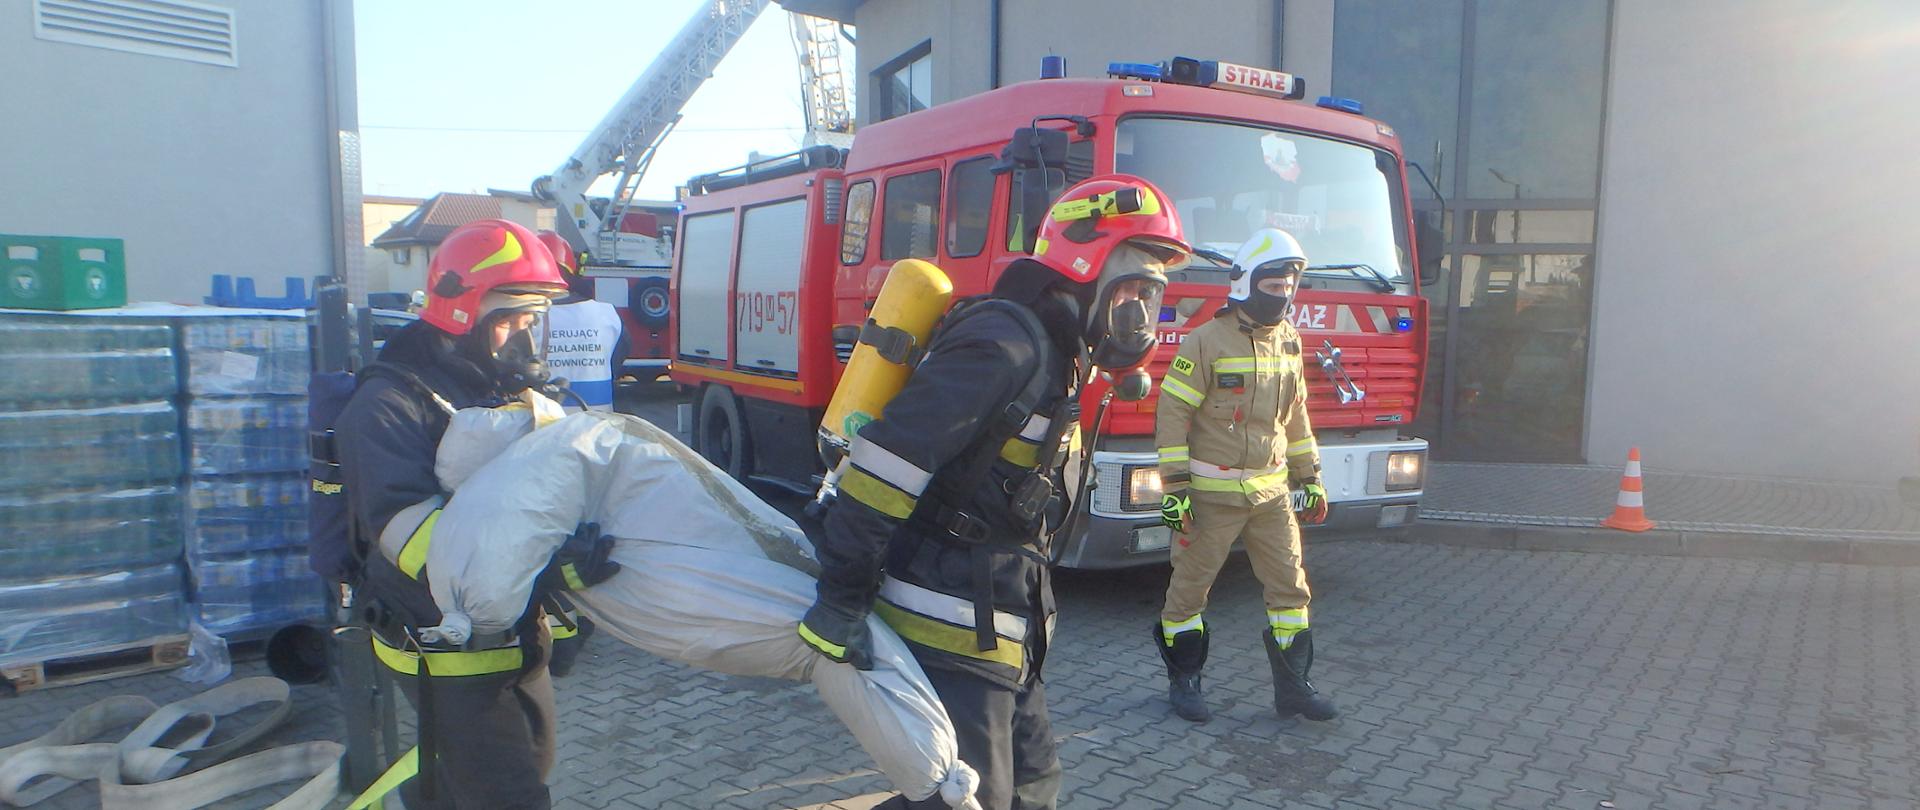 Przed budynkiem biedronki dwóch strażaków w umundurowaniu specjalnym wynosi manekina. Za nimi widać trzeciego strażaka, który idzie i samochód ratowniczo- gaśniczy.